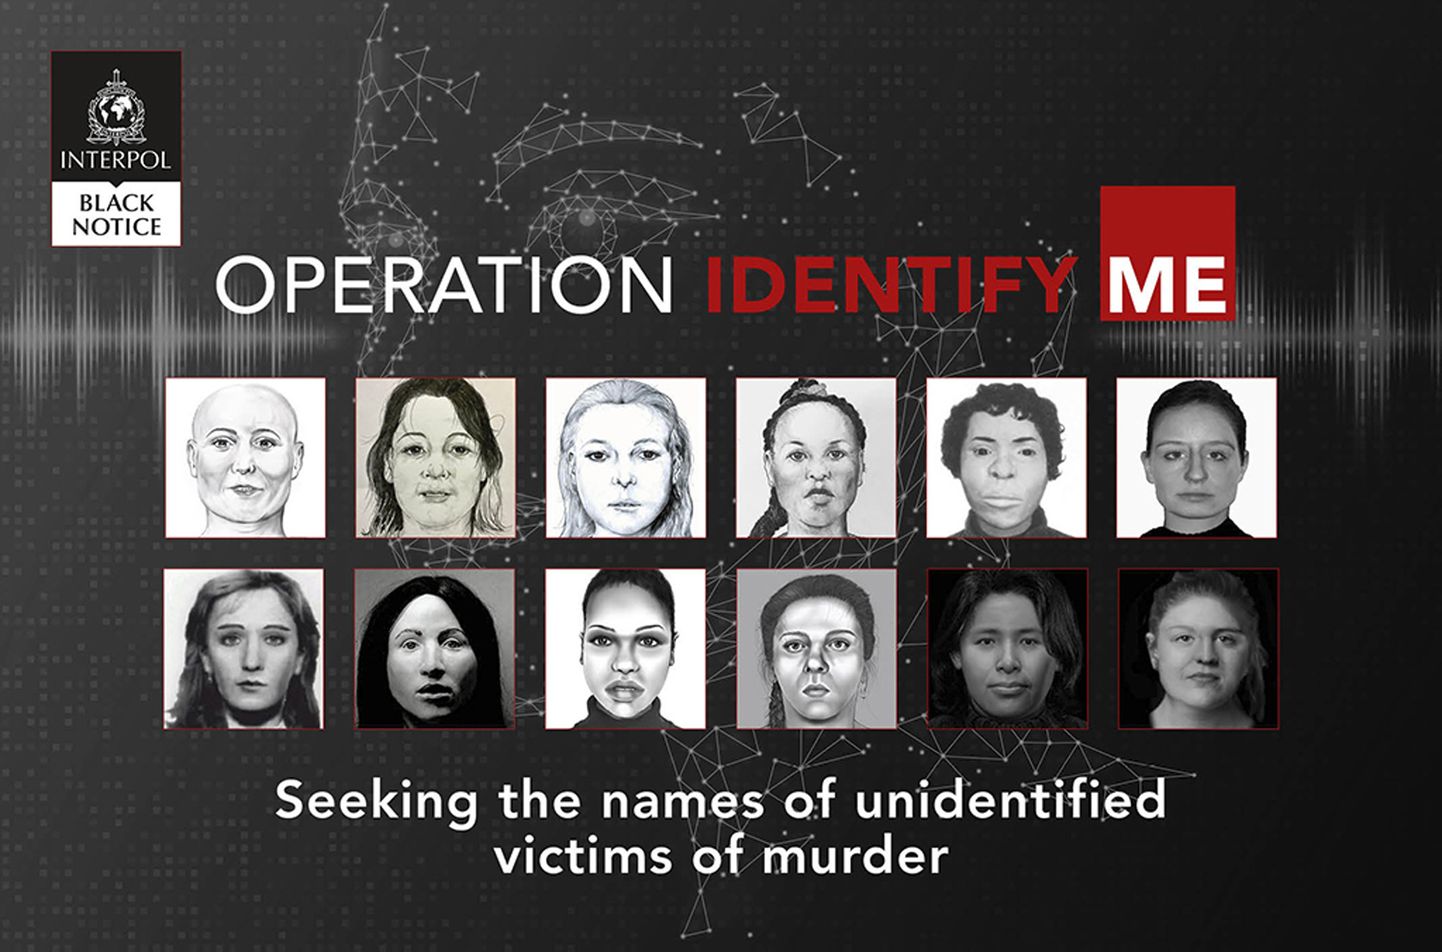 Interpol palub avalikkuse abi, et teha kindlaks 22 mõrvatud naise isik. Osa mõrvu pandi toime 40 aastat tagasi